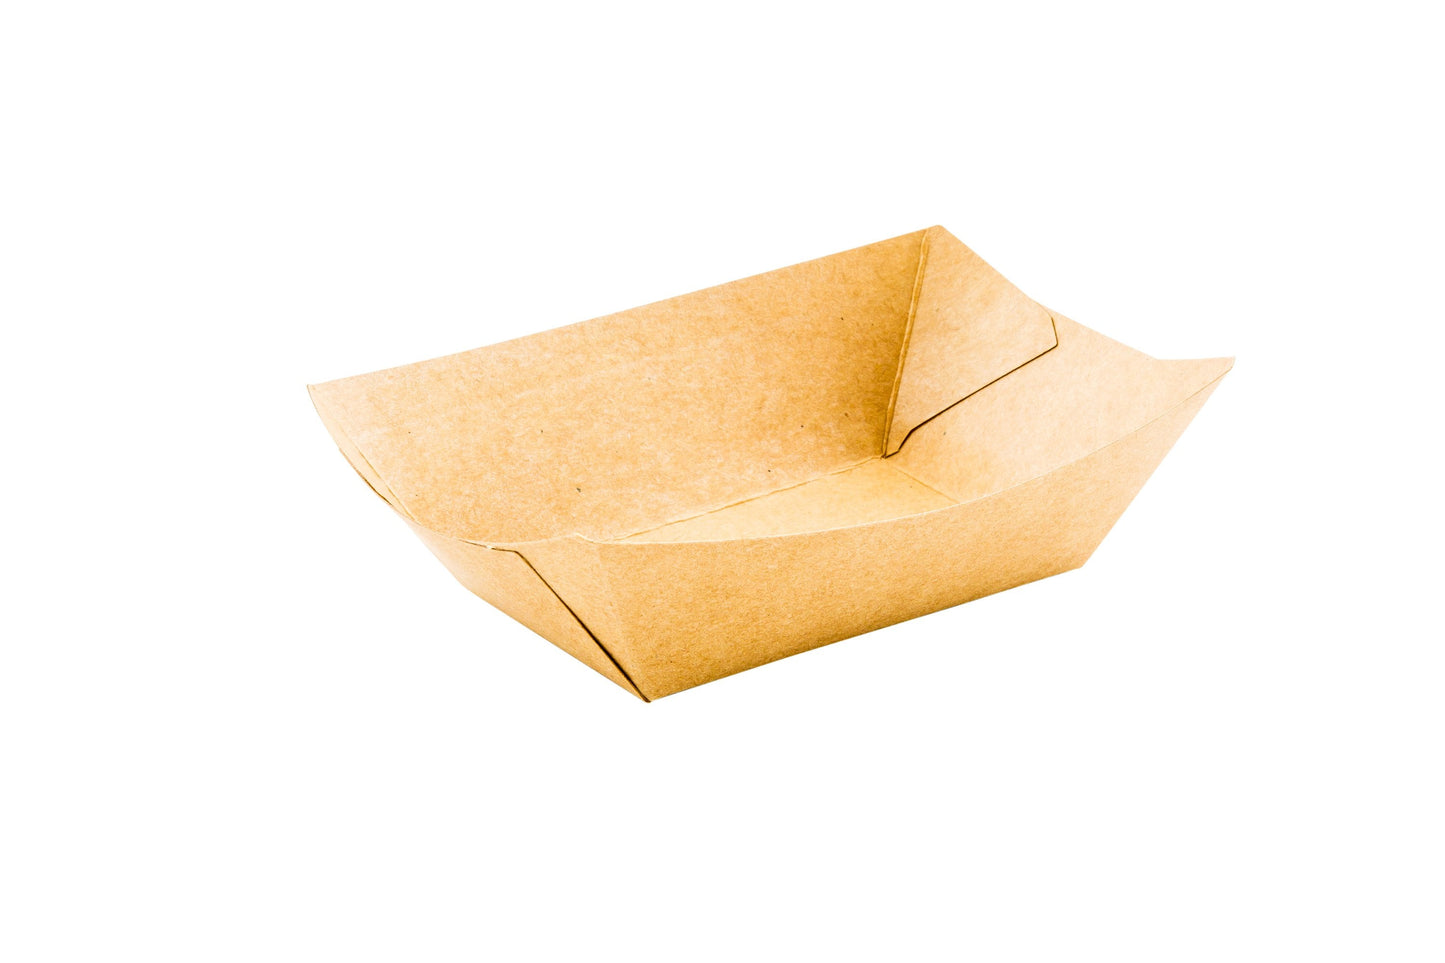 Bio Tek Kraft Paper Boat - 3 1/4" x 2" x 1 1/2" - 400 count box